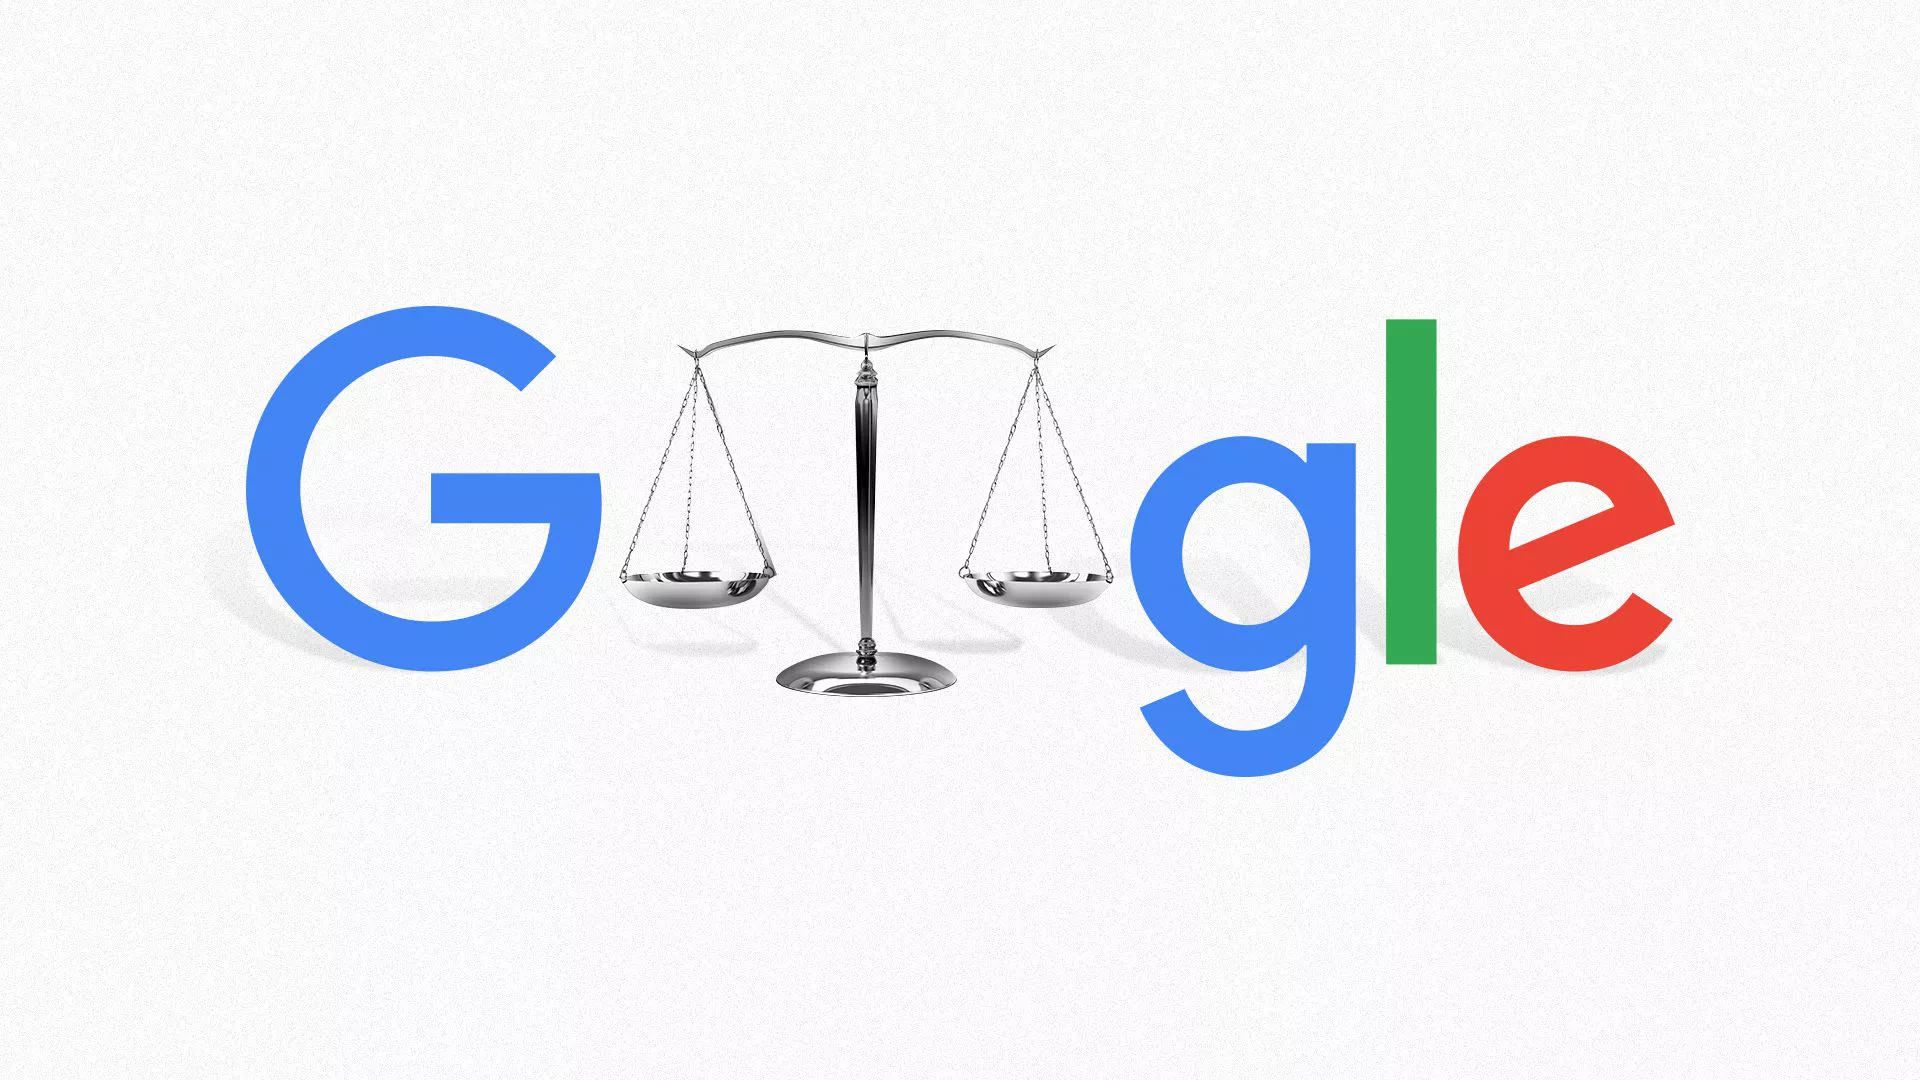 پرونده شکایت از گوگل بابت انحصارطلبی